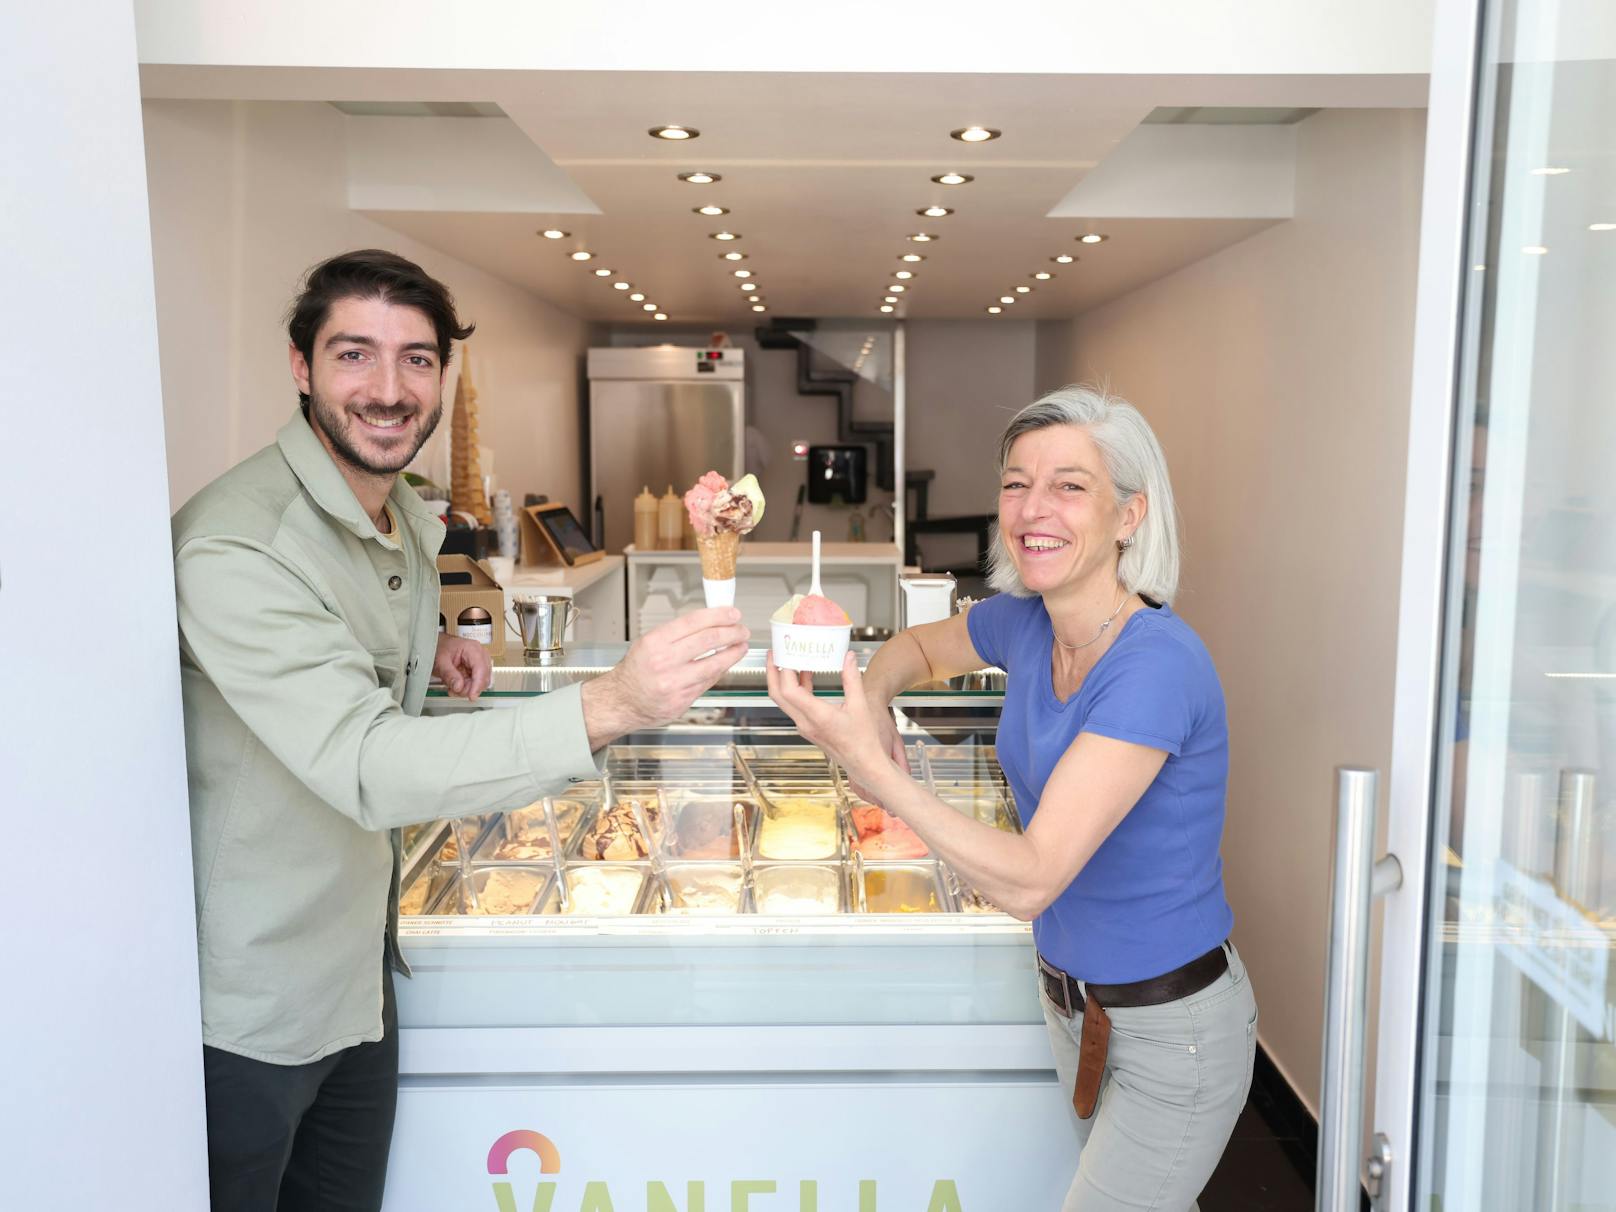 Auch ohne Zucker eine süße Sache: Daniele Valentino (30) und Schwiegermutter Lea Panella (56) führen den Eissalon "Vanella" gemeinsam.